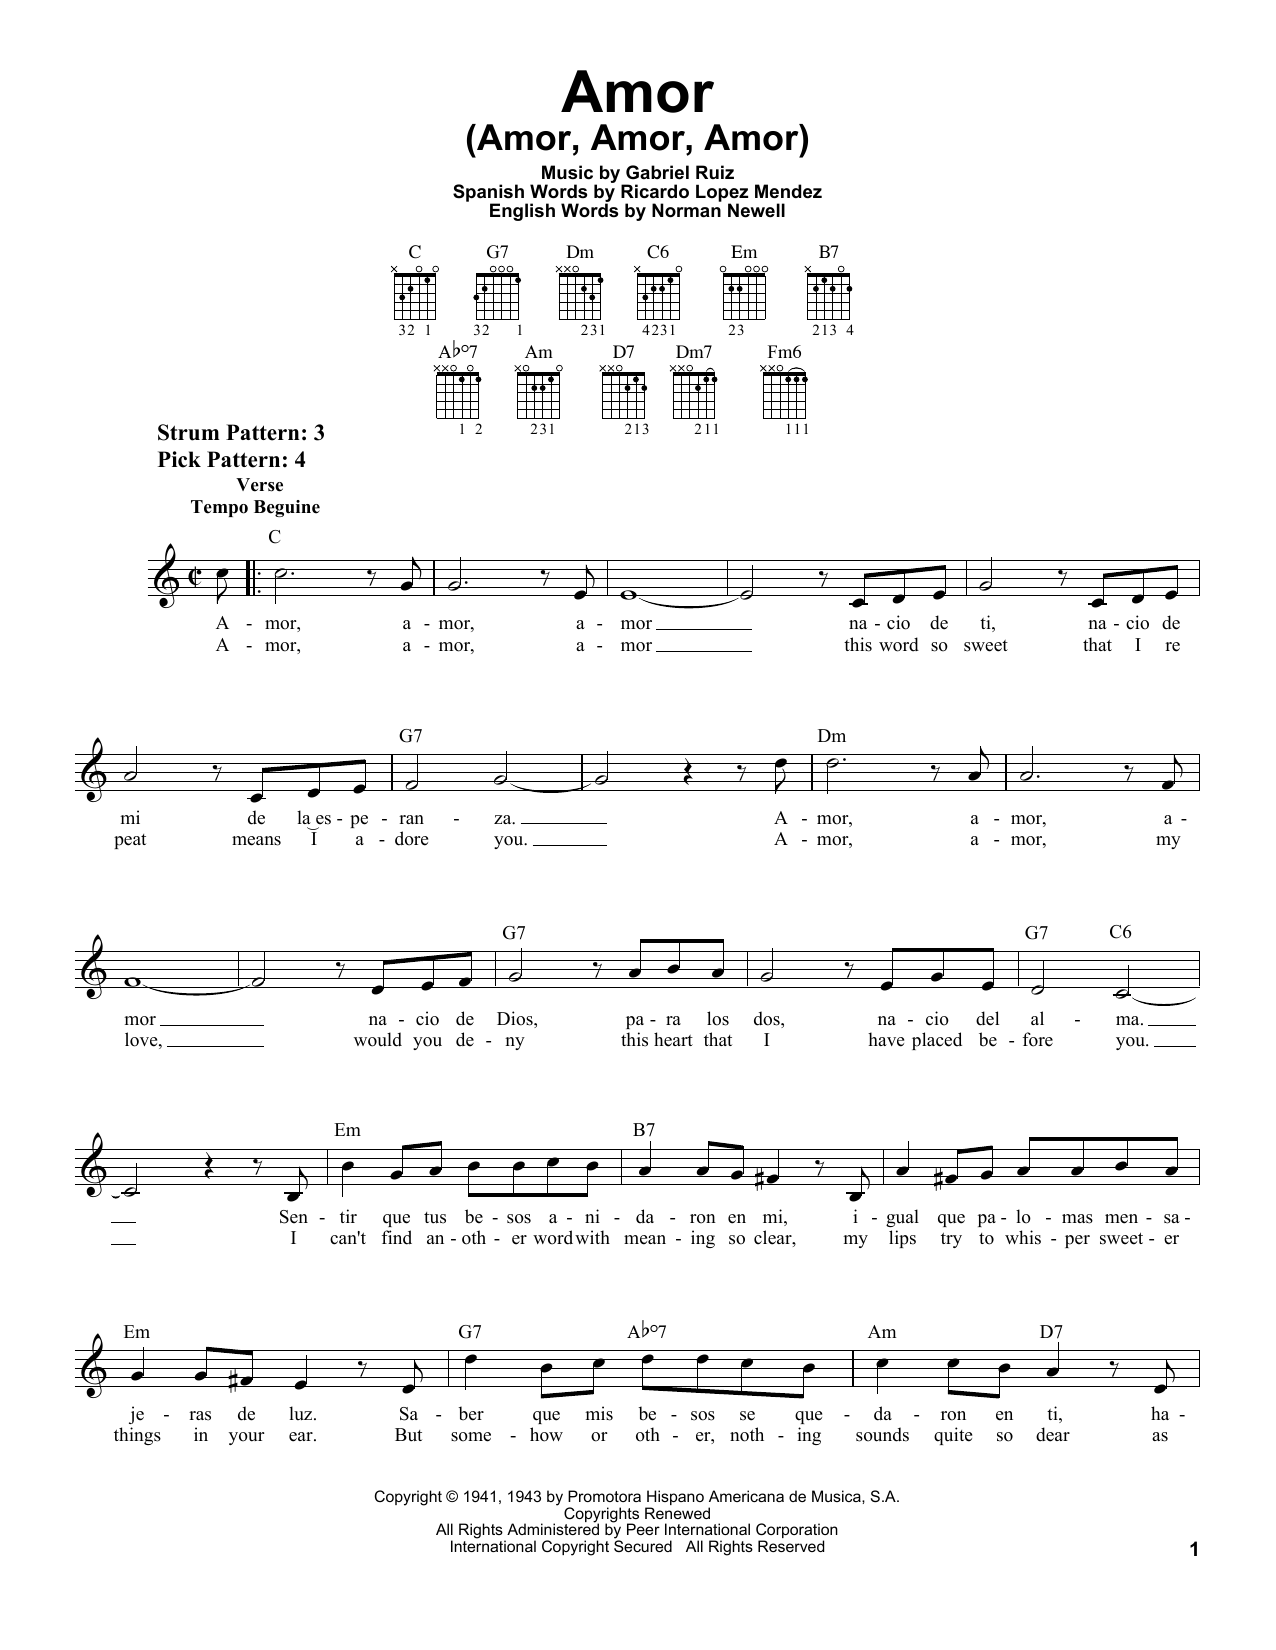 Gabriel Ruiz Amor (Amor, Amor, Amor) Sheet Music Notes & Chords for Easy Guitar - Download or Print PDF